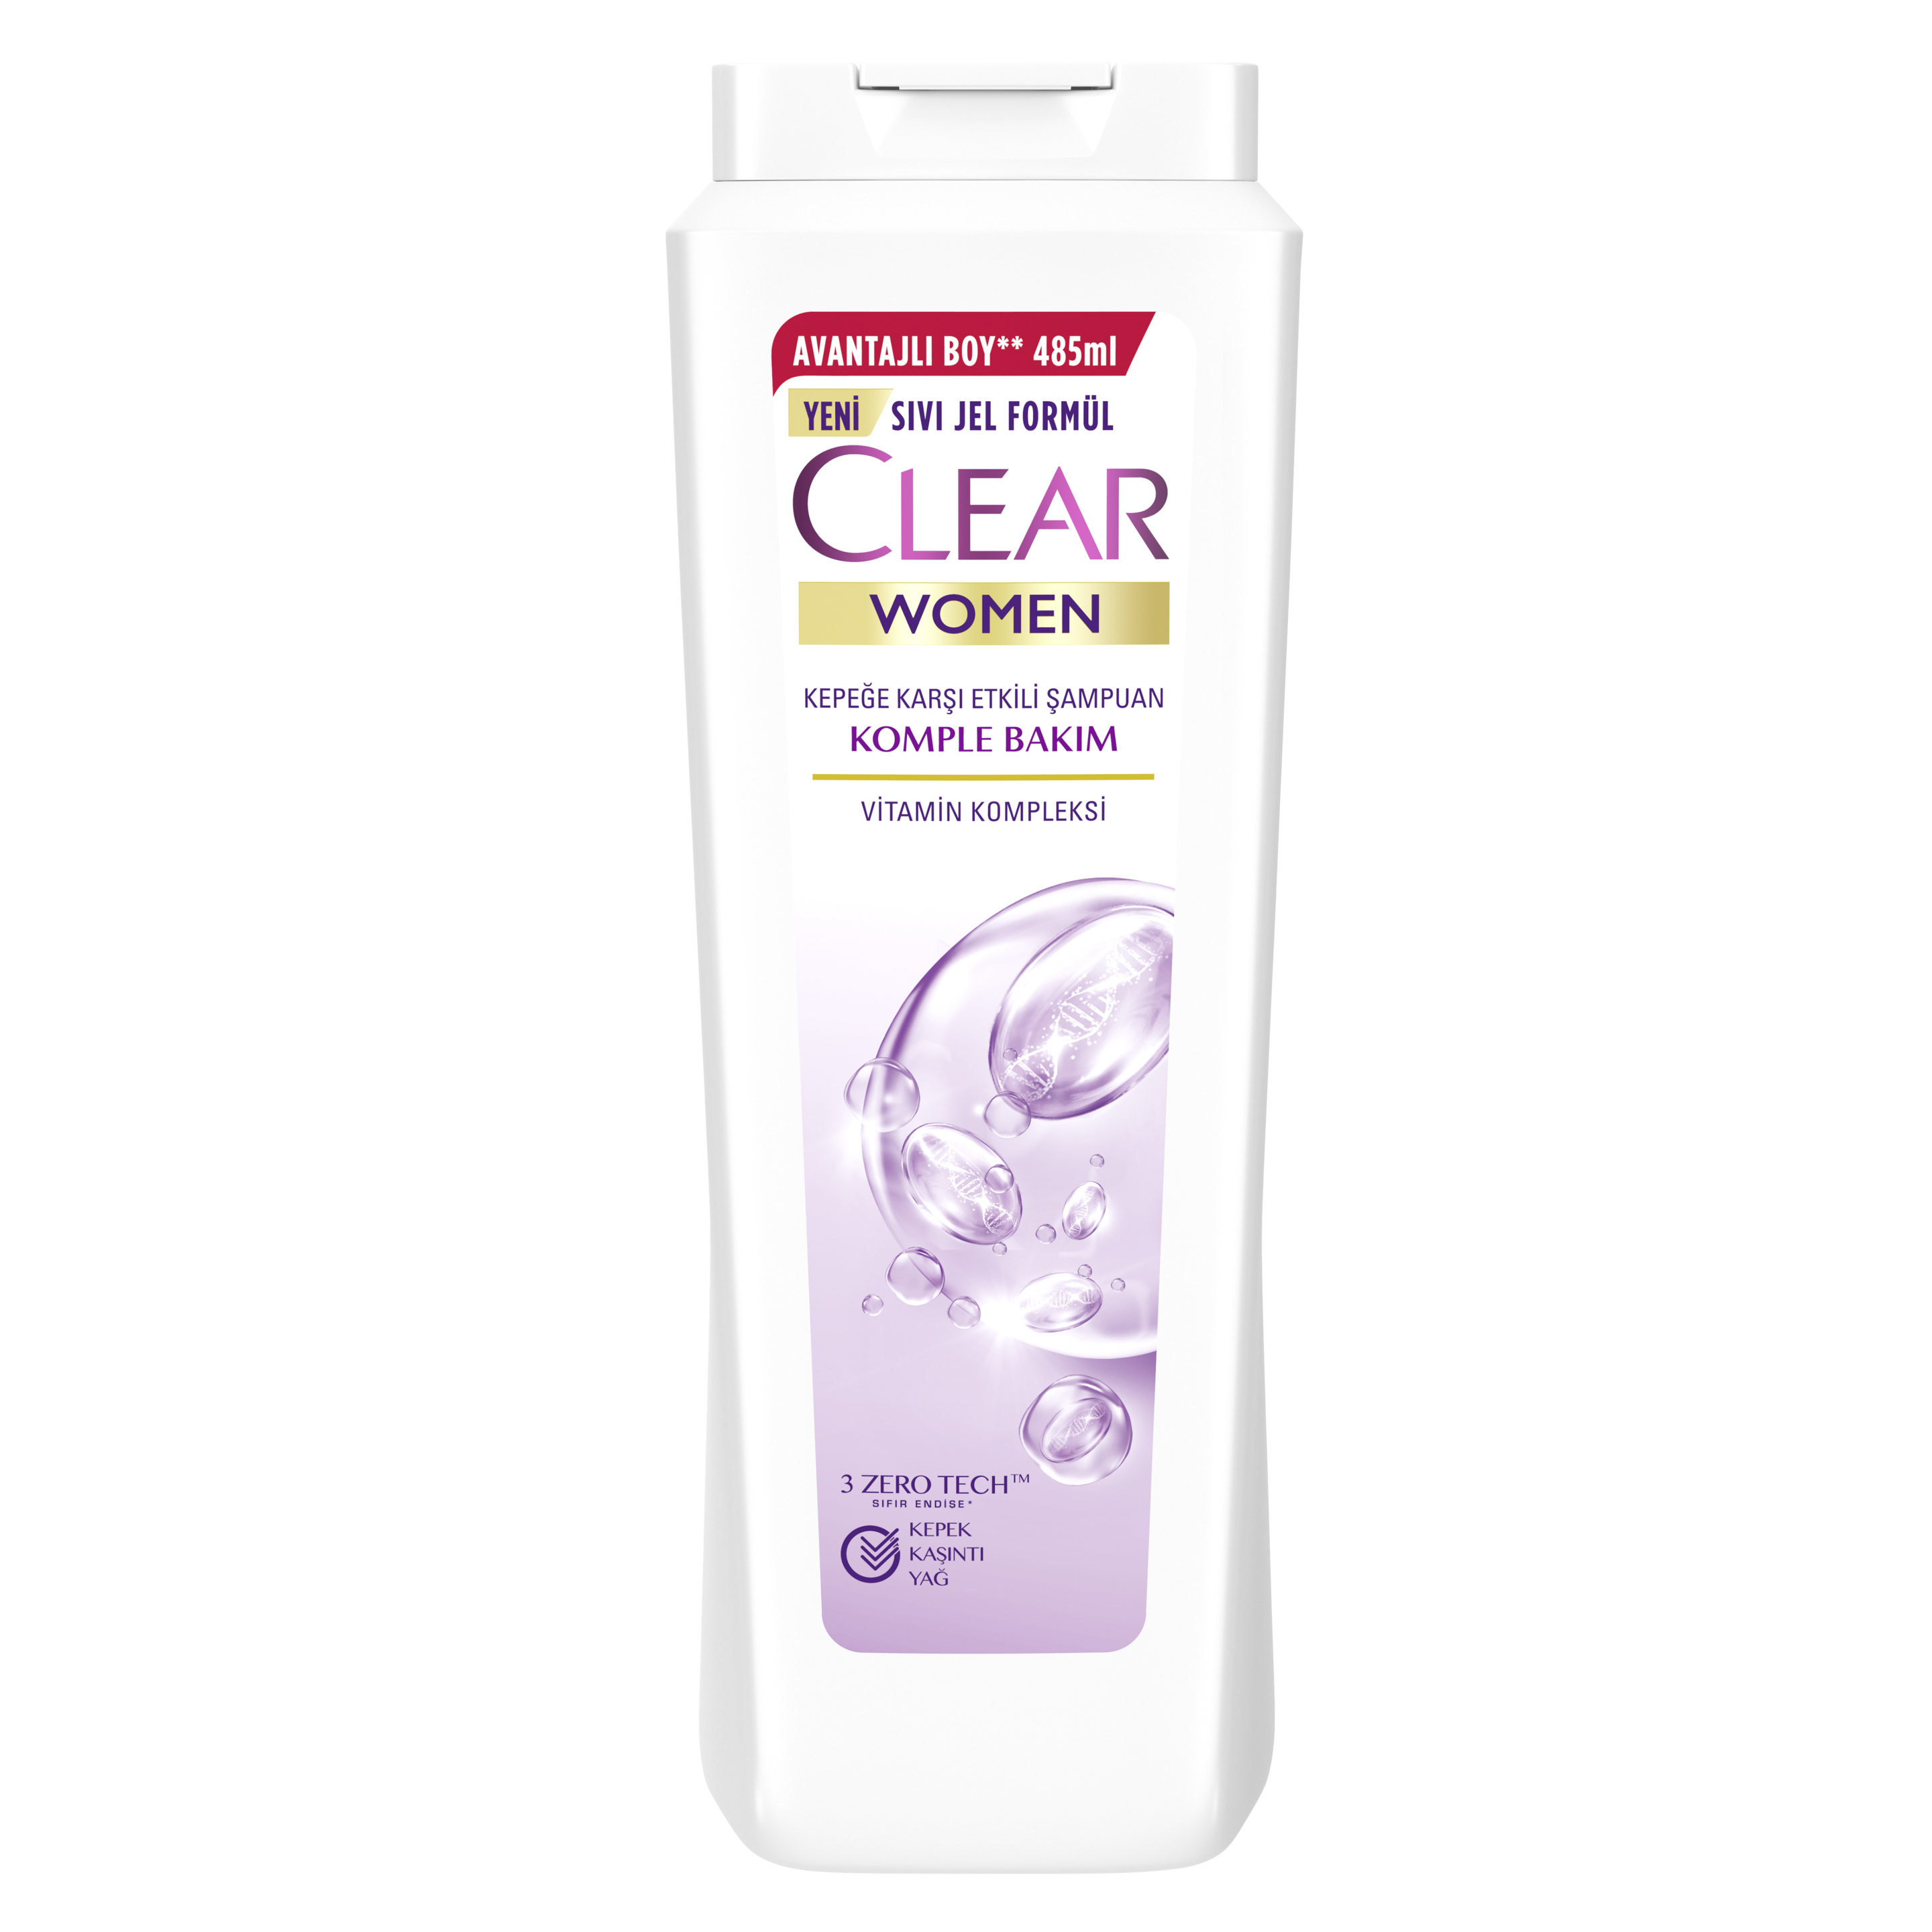 Clear Women Komple Bakım Şampuan